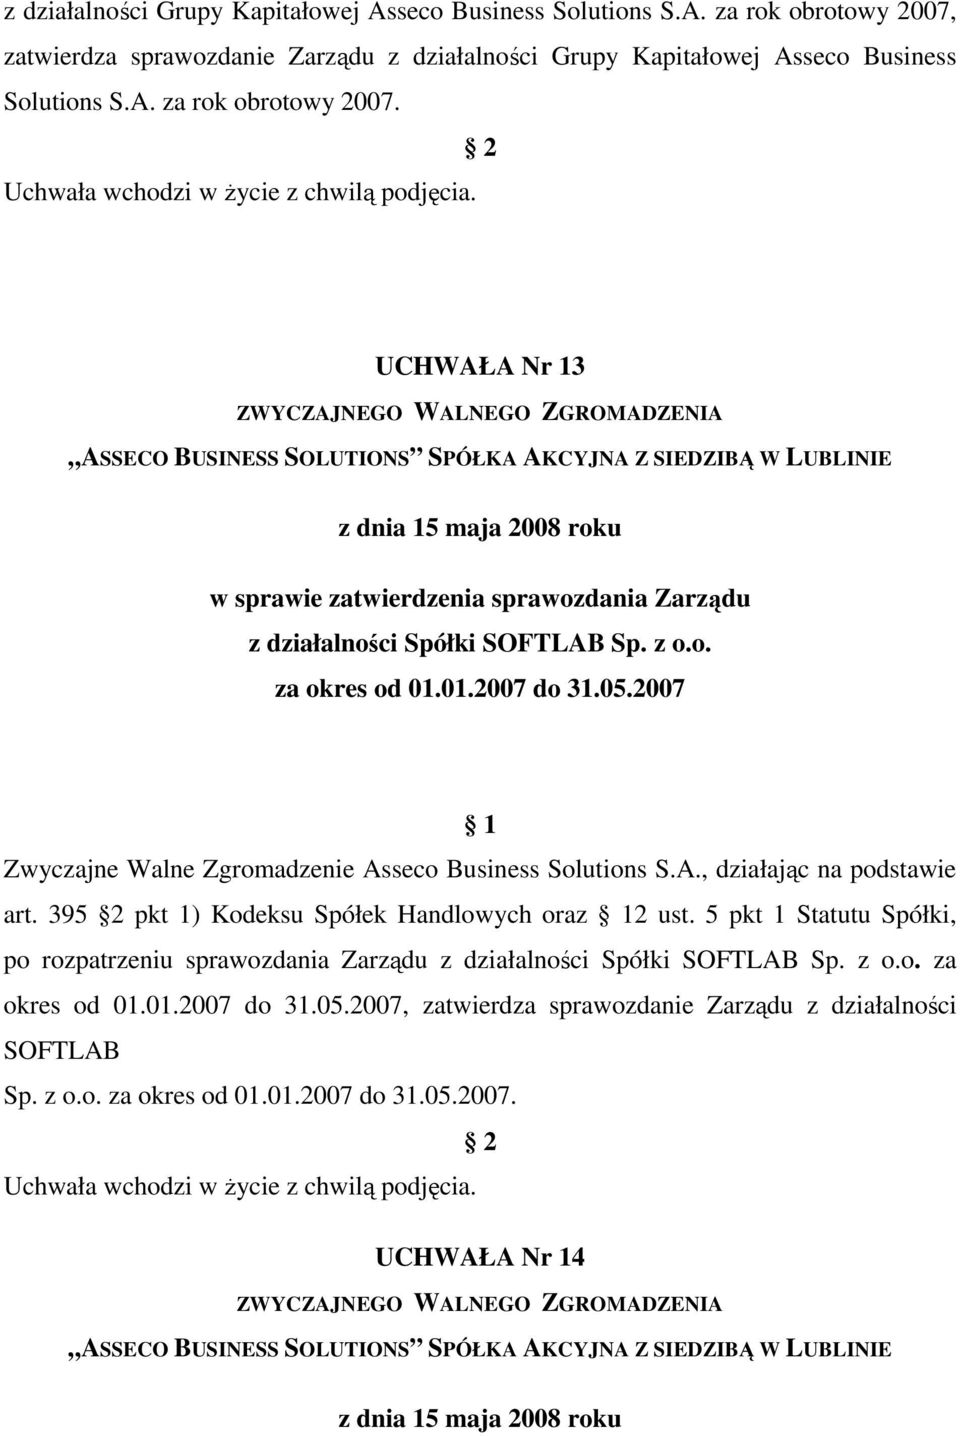 5 pkt 1 Statutu Spółki, po rozpatrzeniu sprawozdania Zarządu z działalności Spółki SOFTLAB Sp. z o.o. za okres od 01.01.2007 do 31.05.